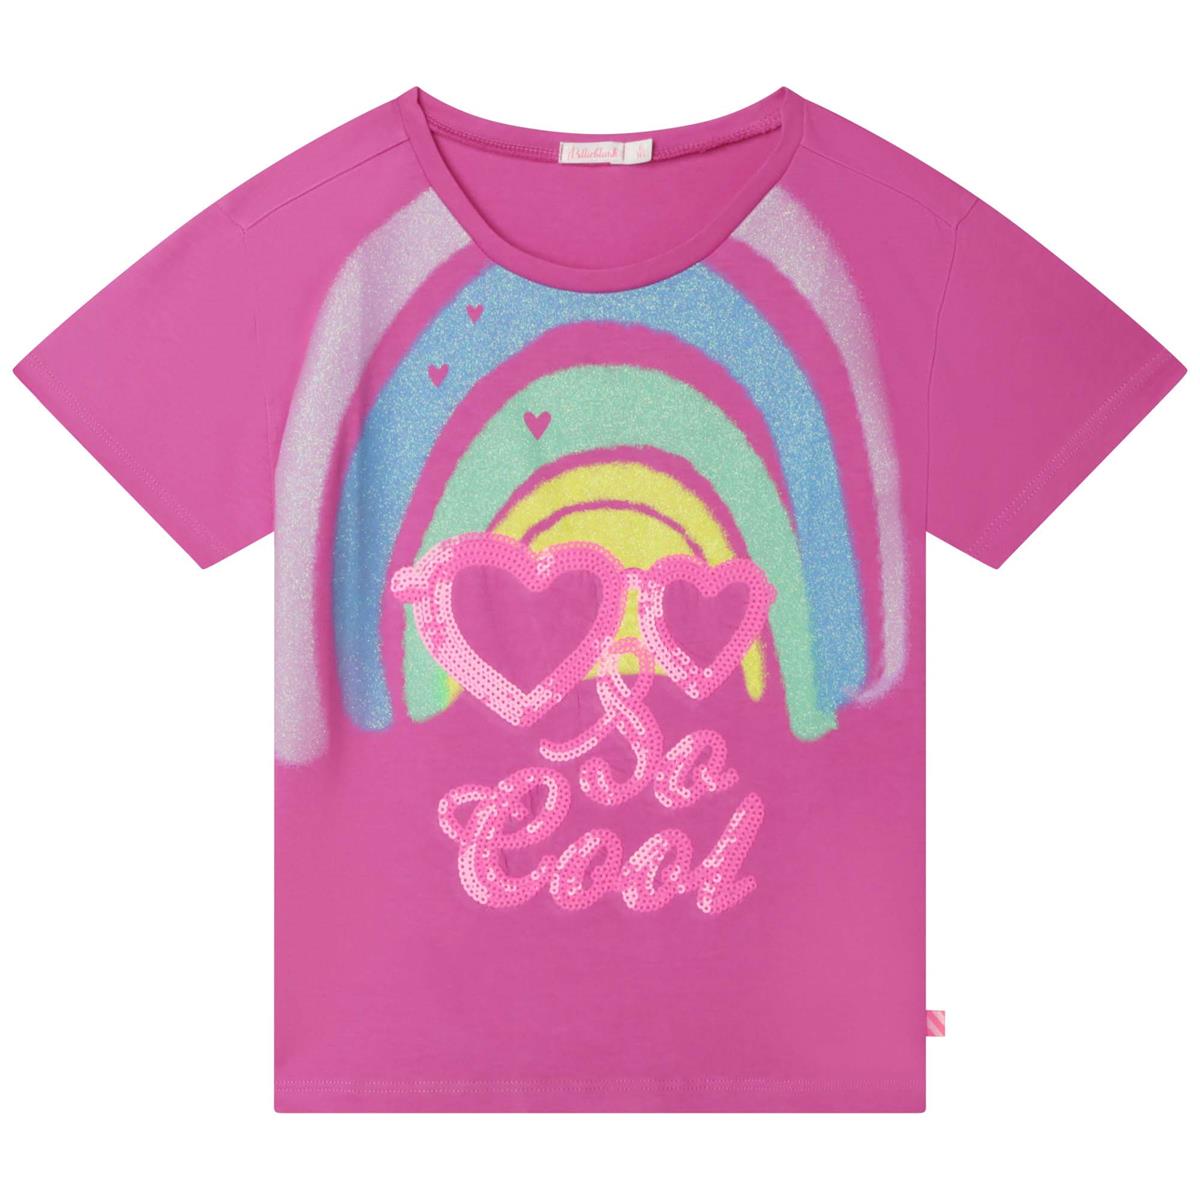 Girls Fuchsia Printed T-Shirt